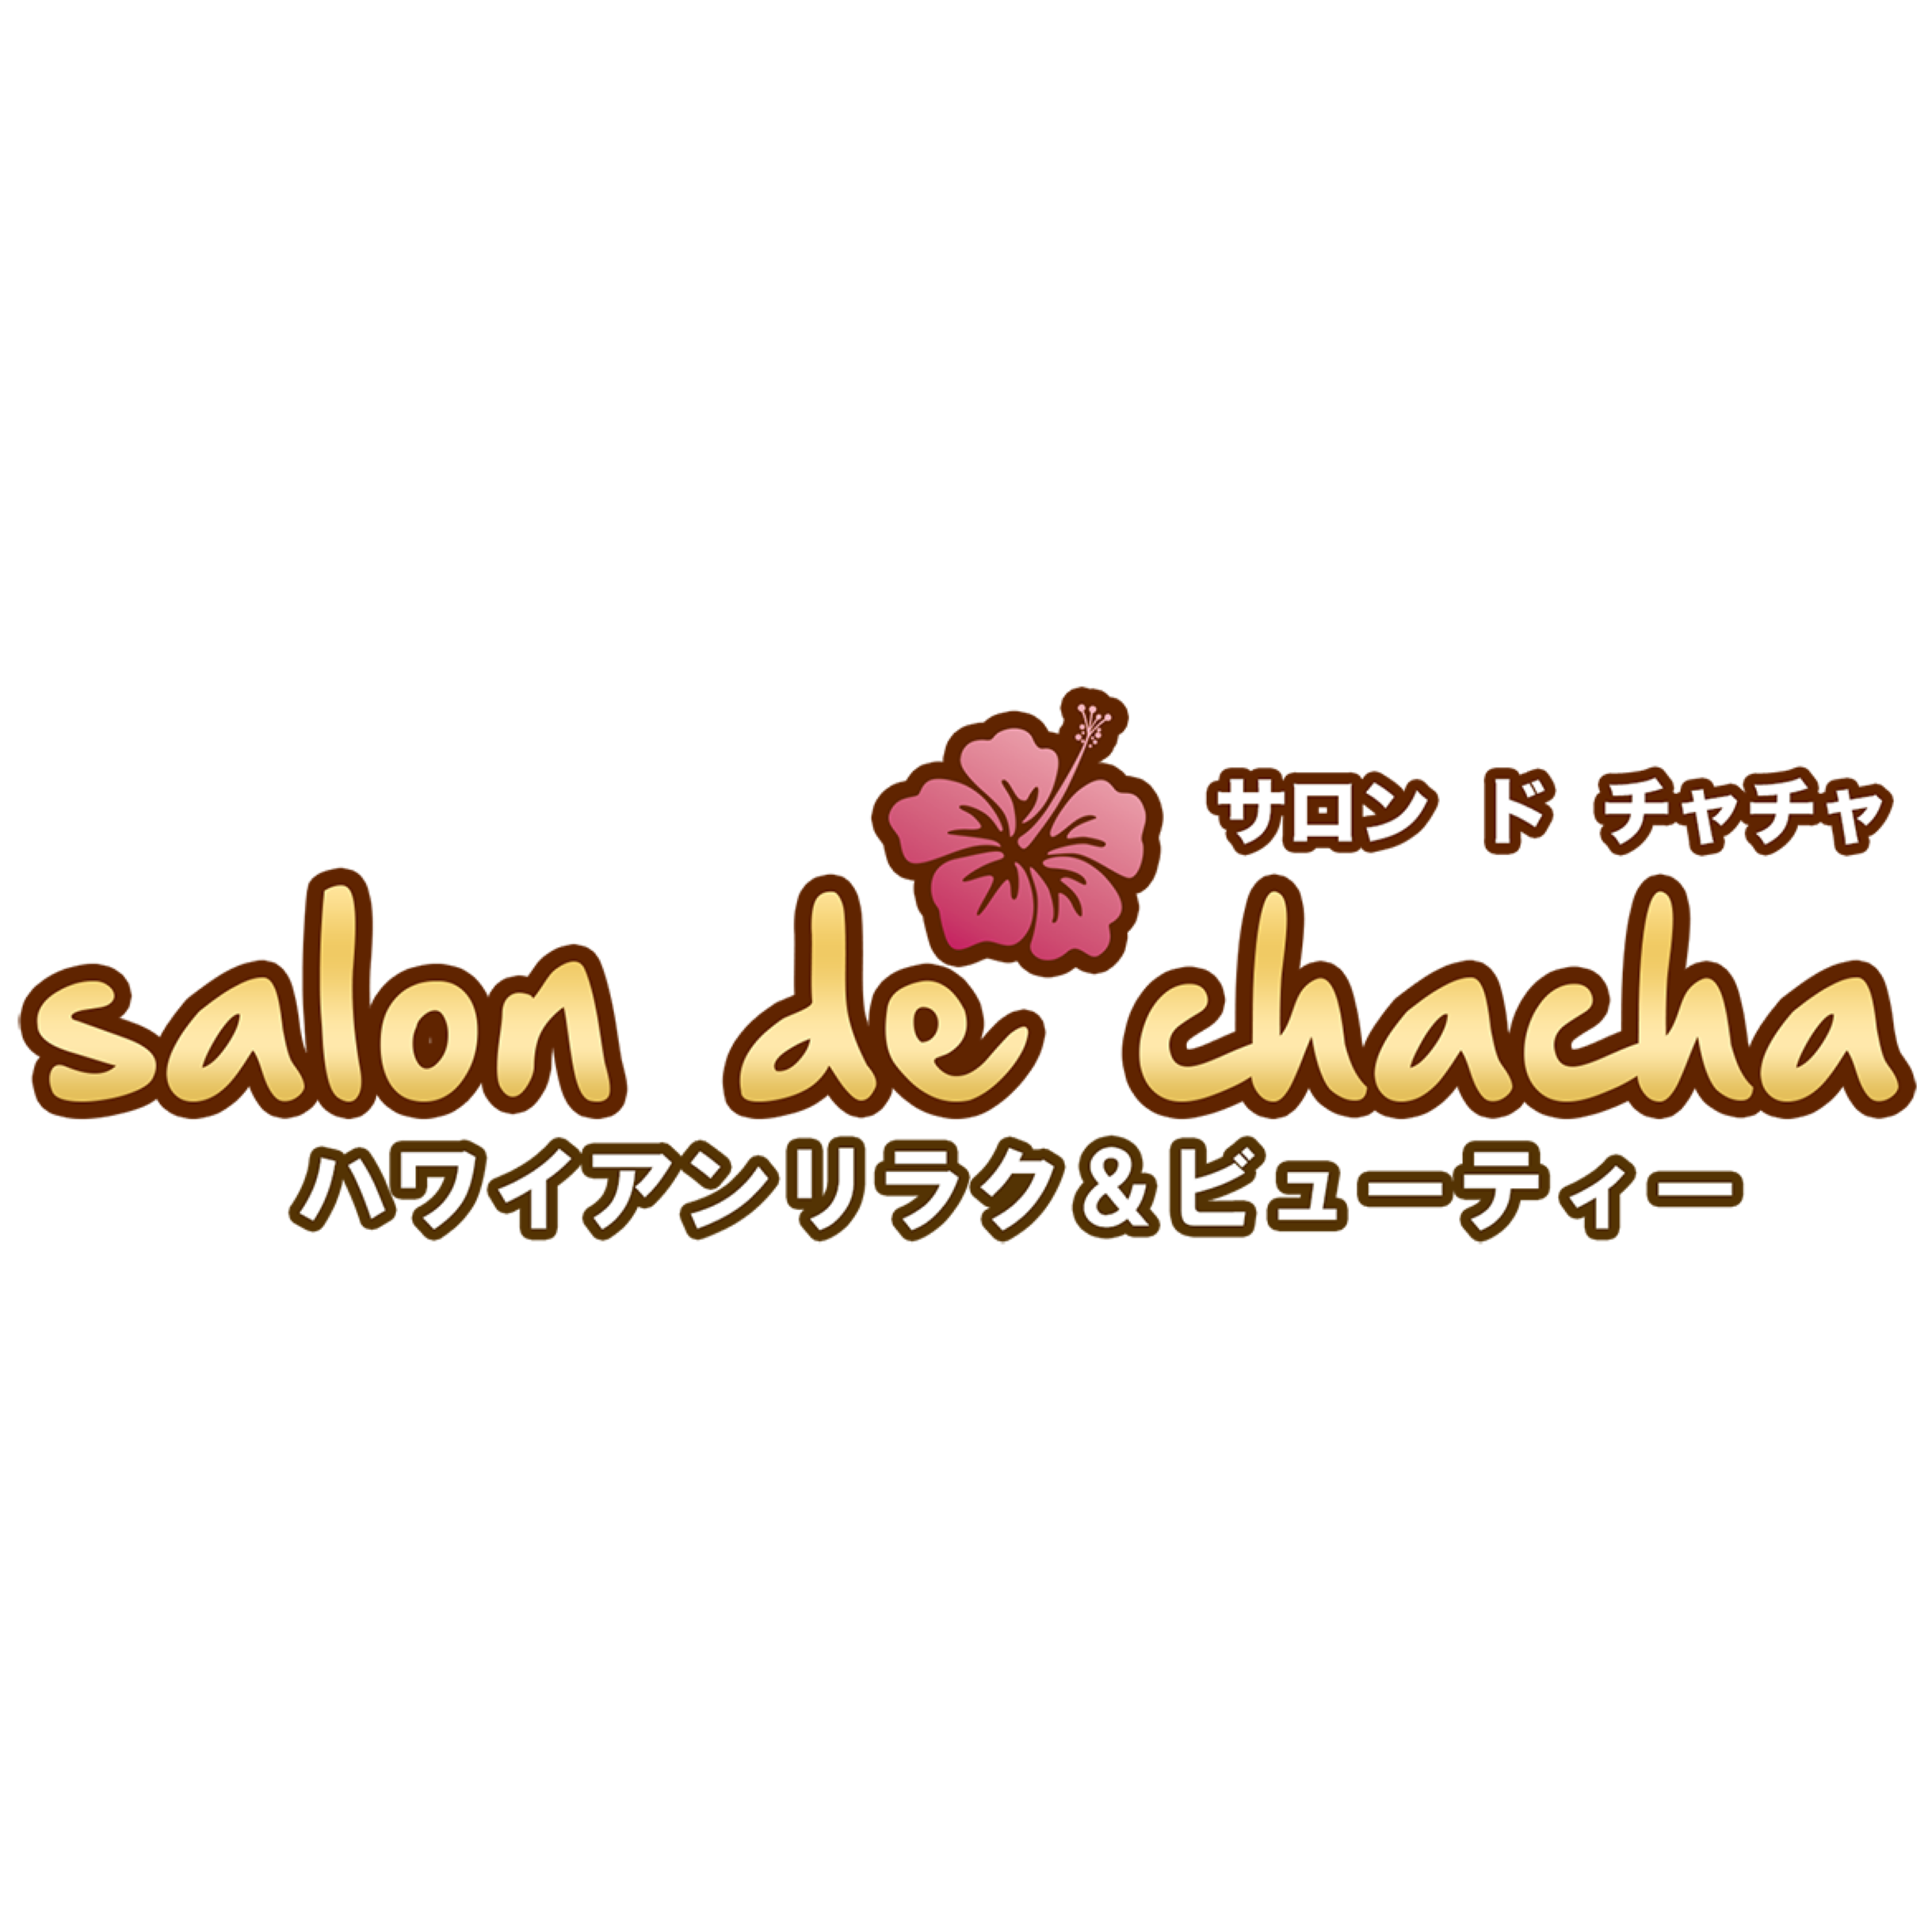 Salon de chacha 渋谷本店〜ハワイアンリラク＆ビューティー〜 Logo